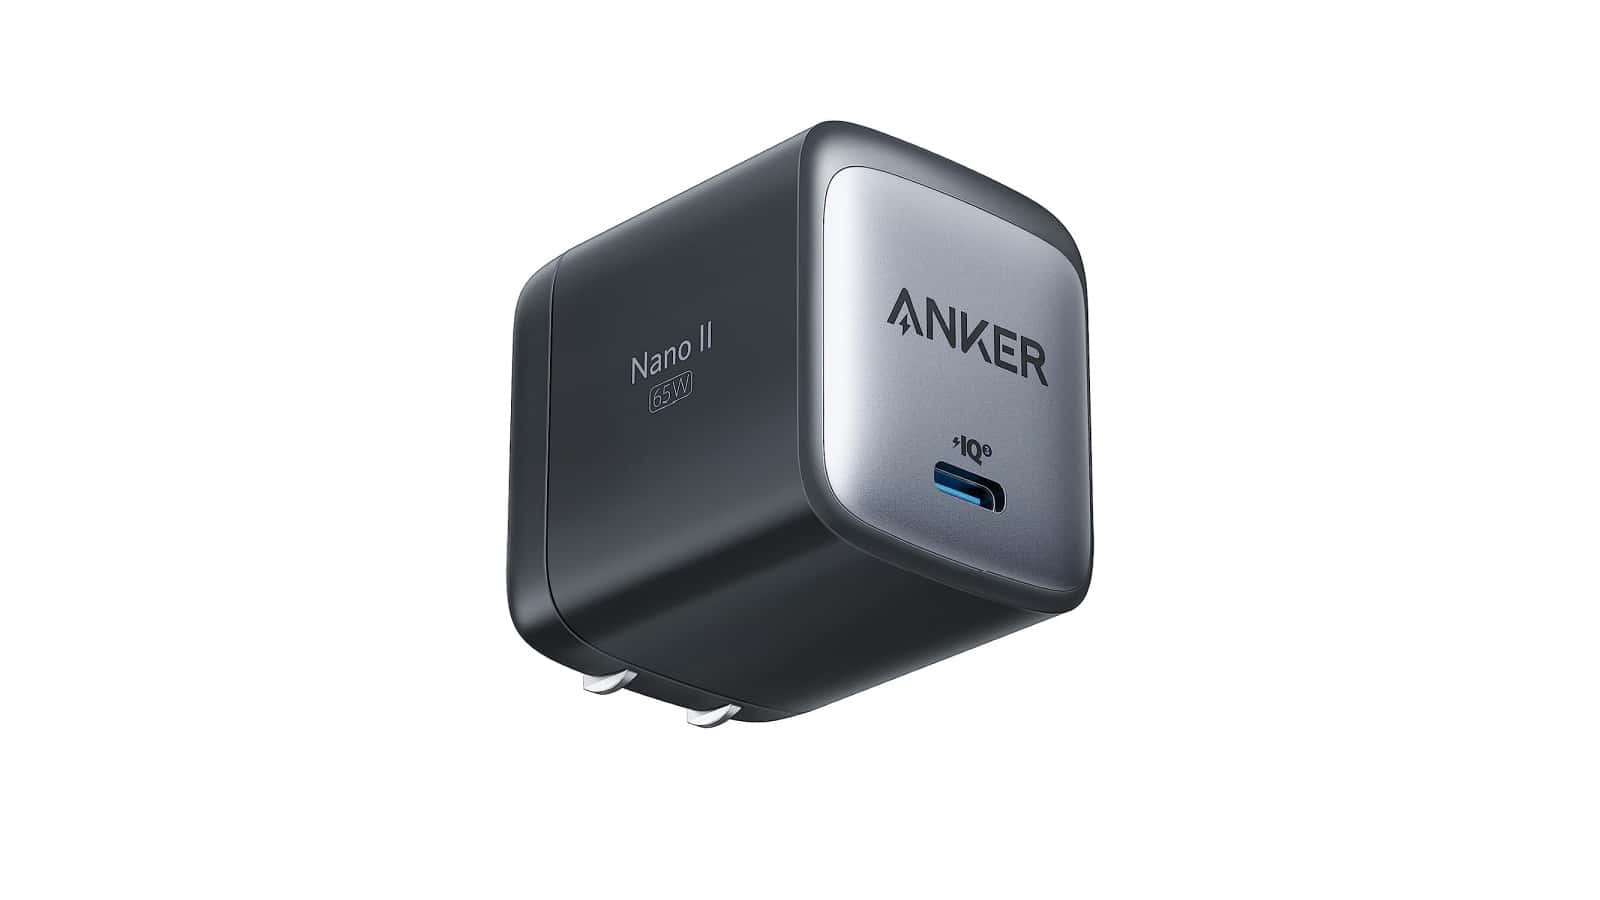 Obtenga el cargador rápido compacto Anker 715 Nano II por $ 27,99